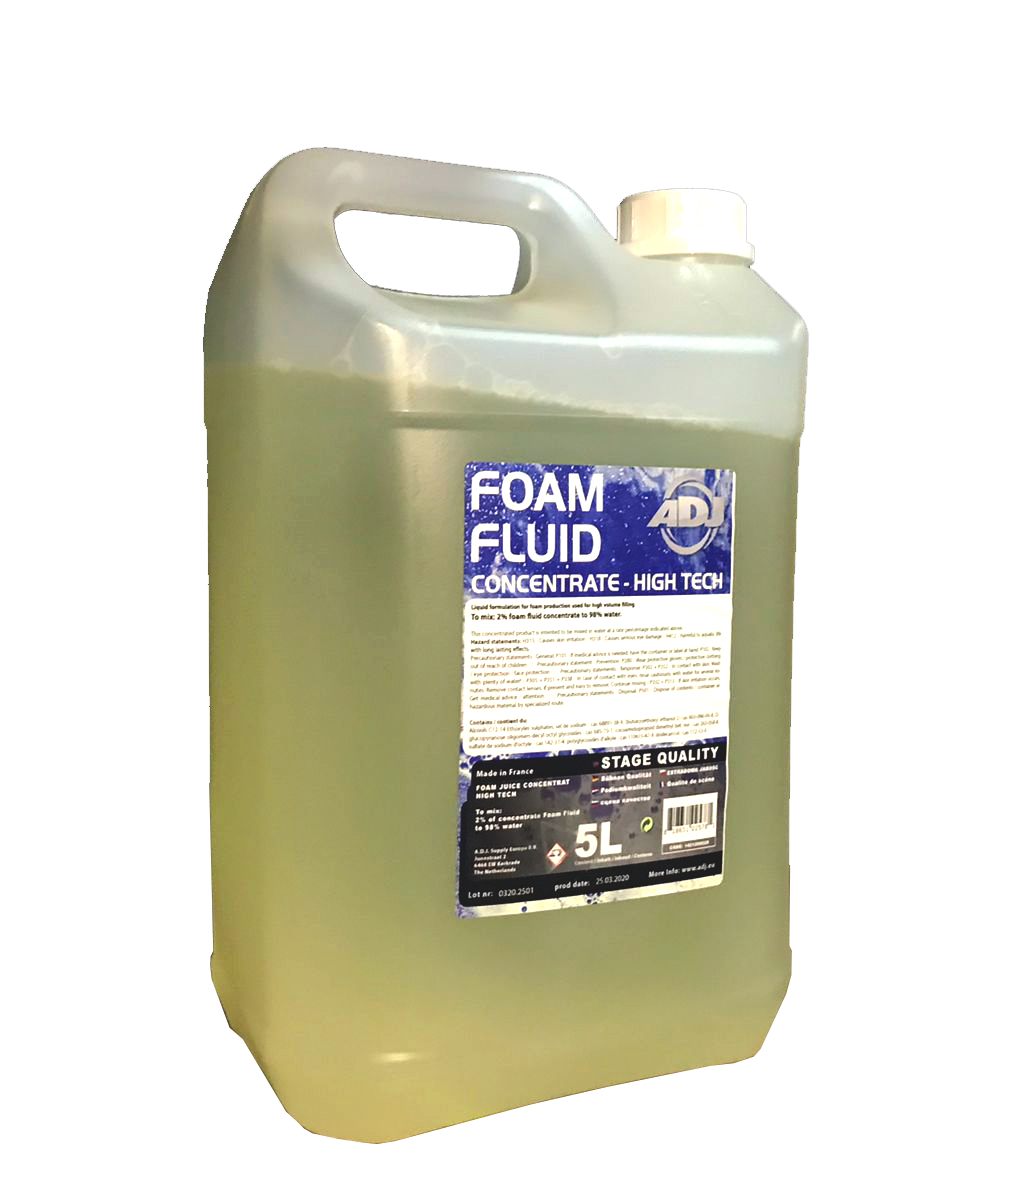 Жидкость для генератора мыльных пузырей American Dj Foam Fluid 5L жидкость для генератора мыльных пузырей sfat can 5l eurobubble ht